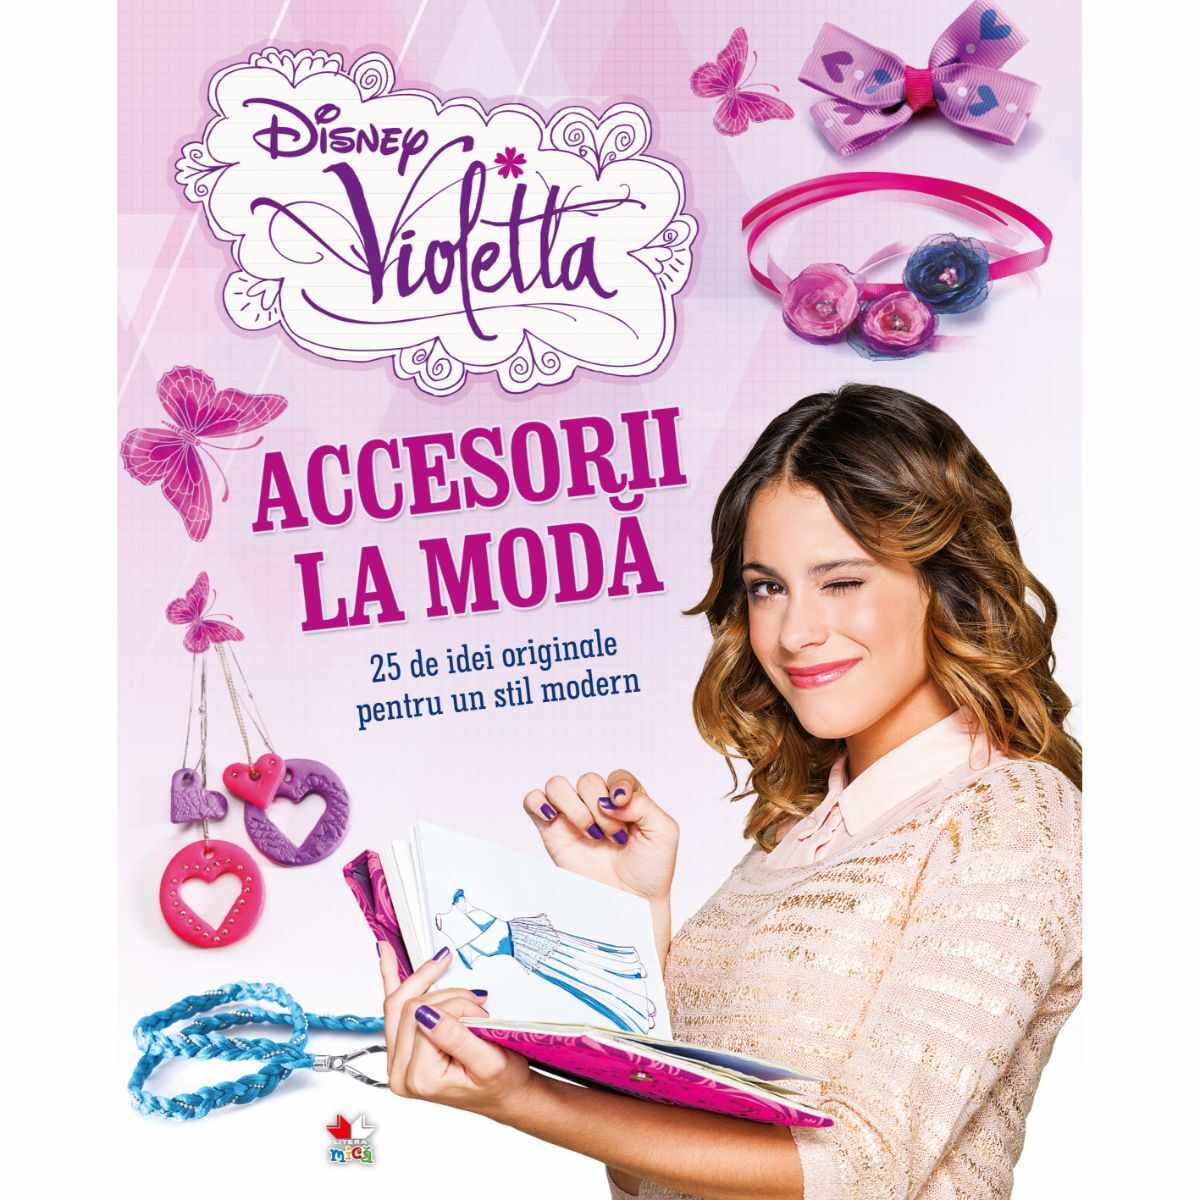 Disney Violetta, Accesorii la moda